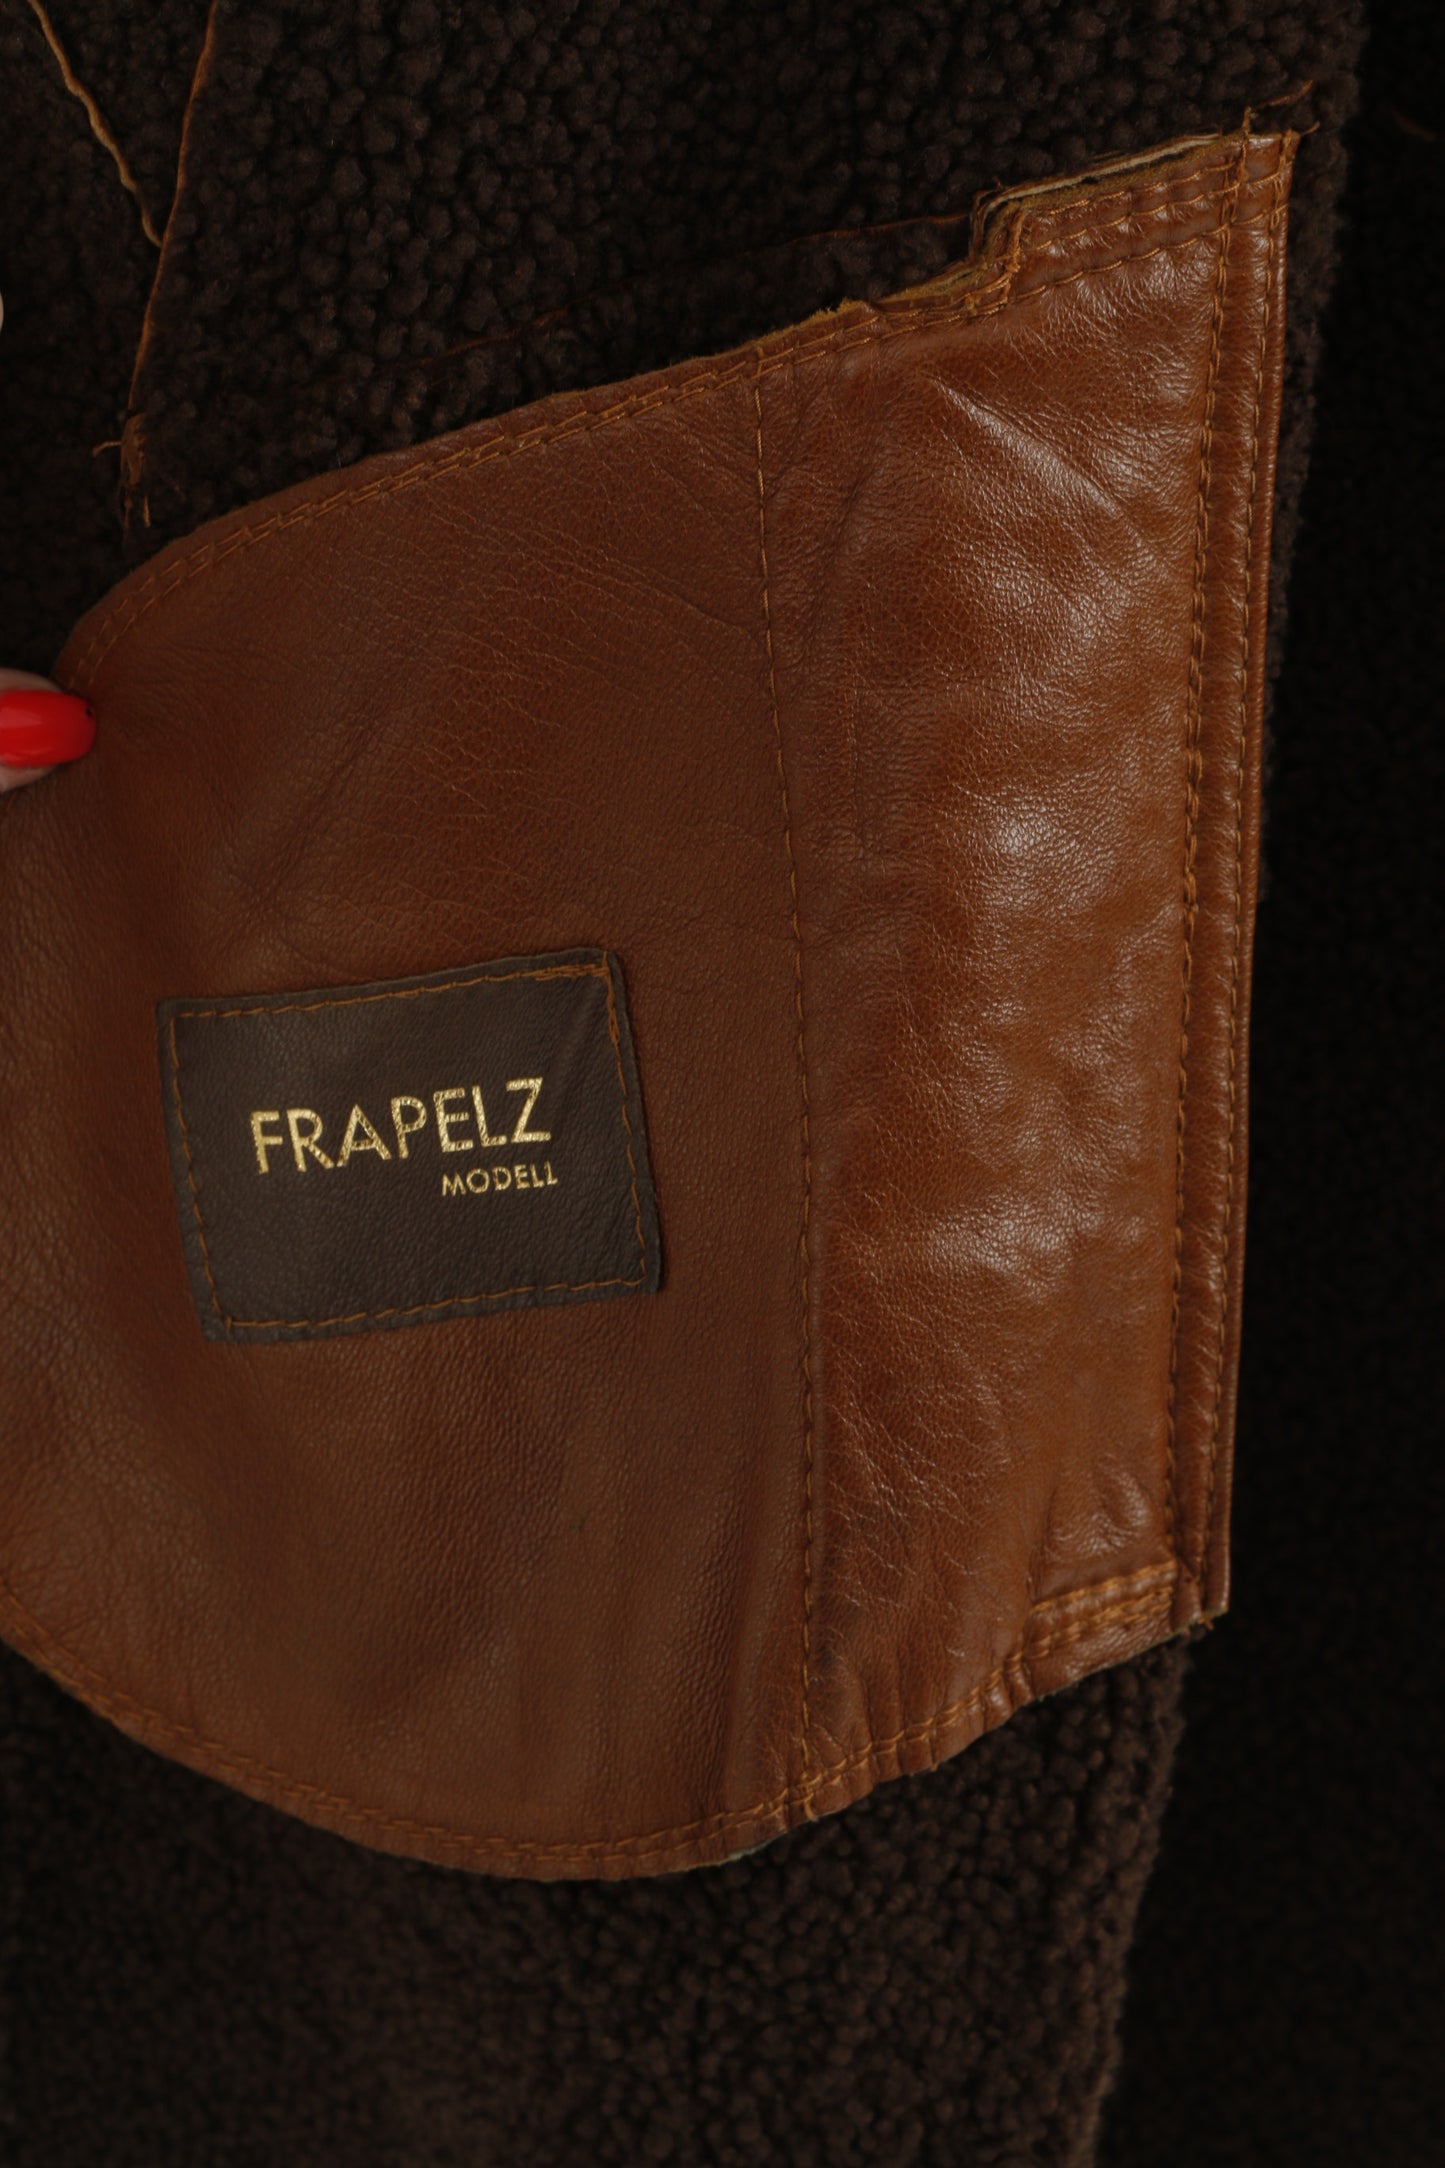 Giacca Frapelz modello donna L in pelle marrone vintage anni '90 con bottoni e parte superiore lunga